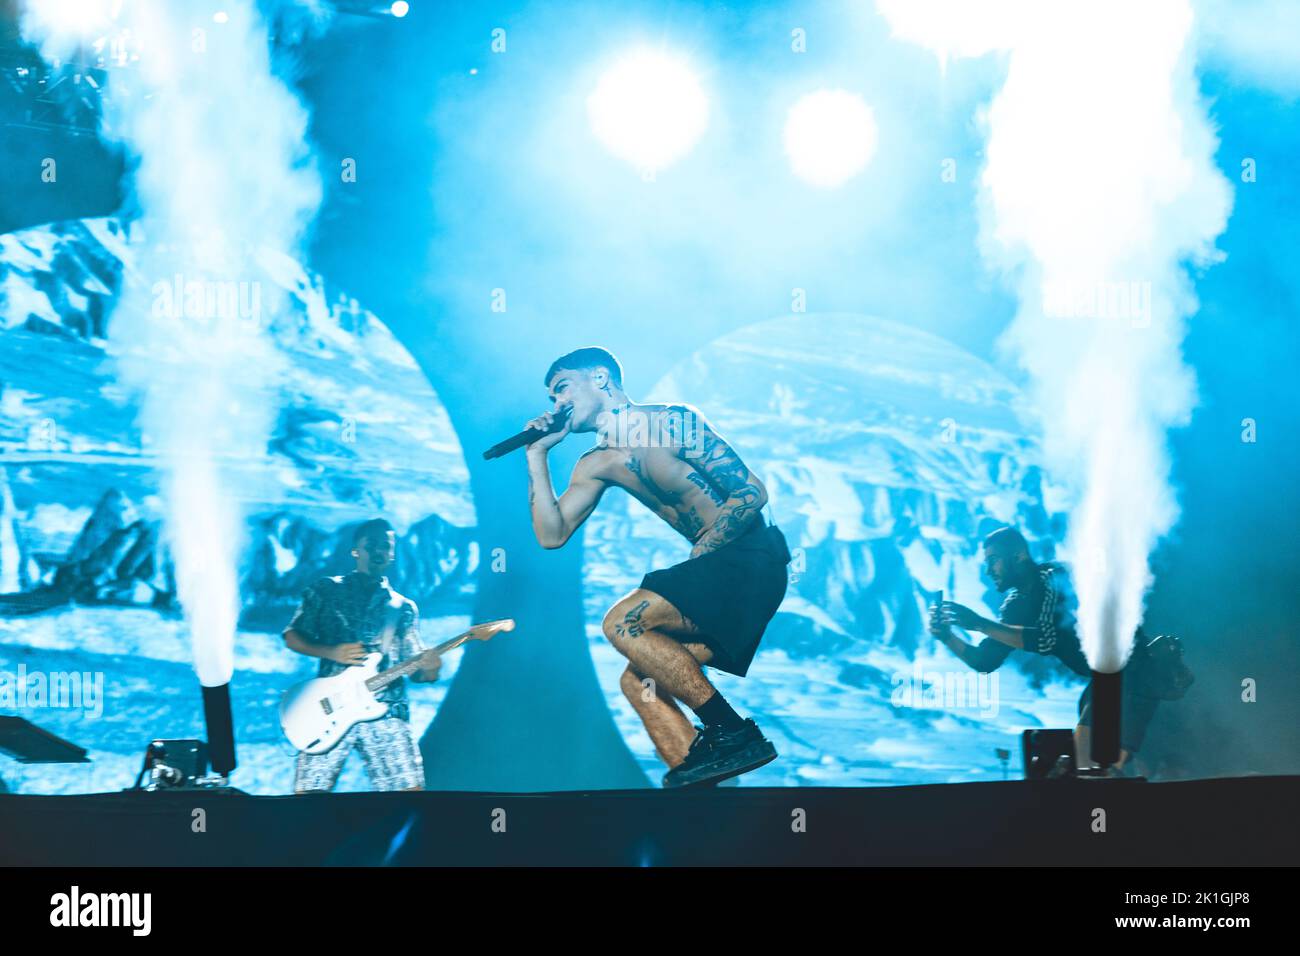 17/09/2022 - Italian rapper BLANCO performing live at Ippodromo SNAI in ...